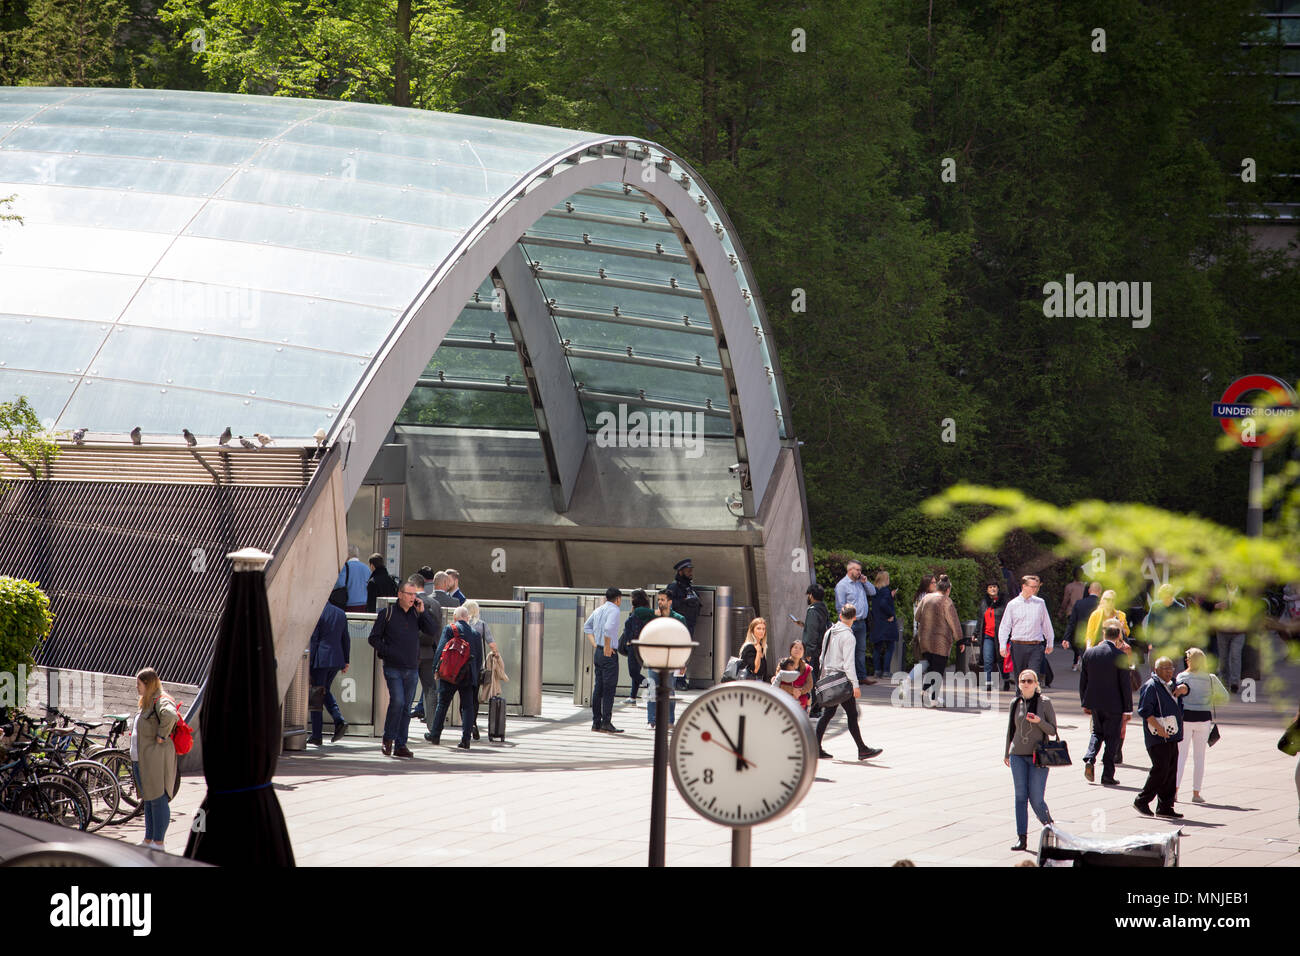 Stazione metropolitana di Canary Wharf entrata nel sole di primavera, con un orologio in primo piano Foto Stock